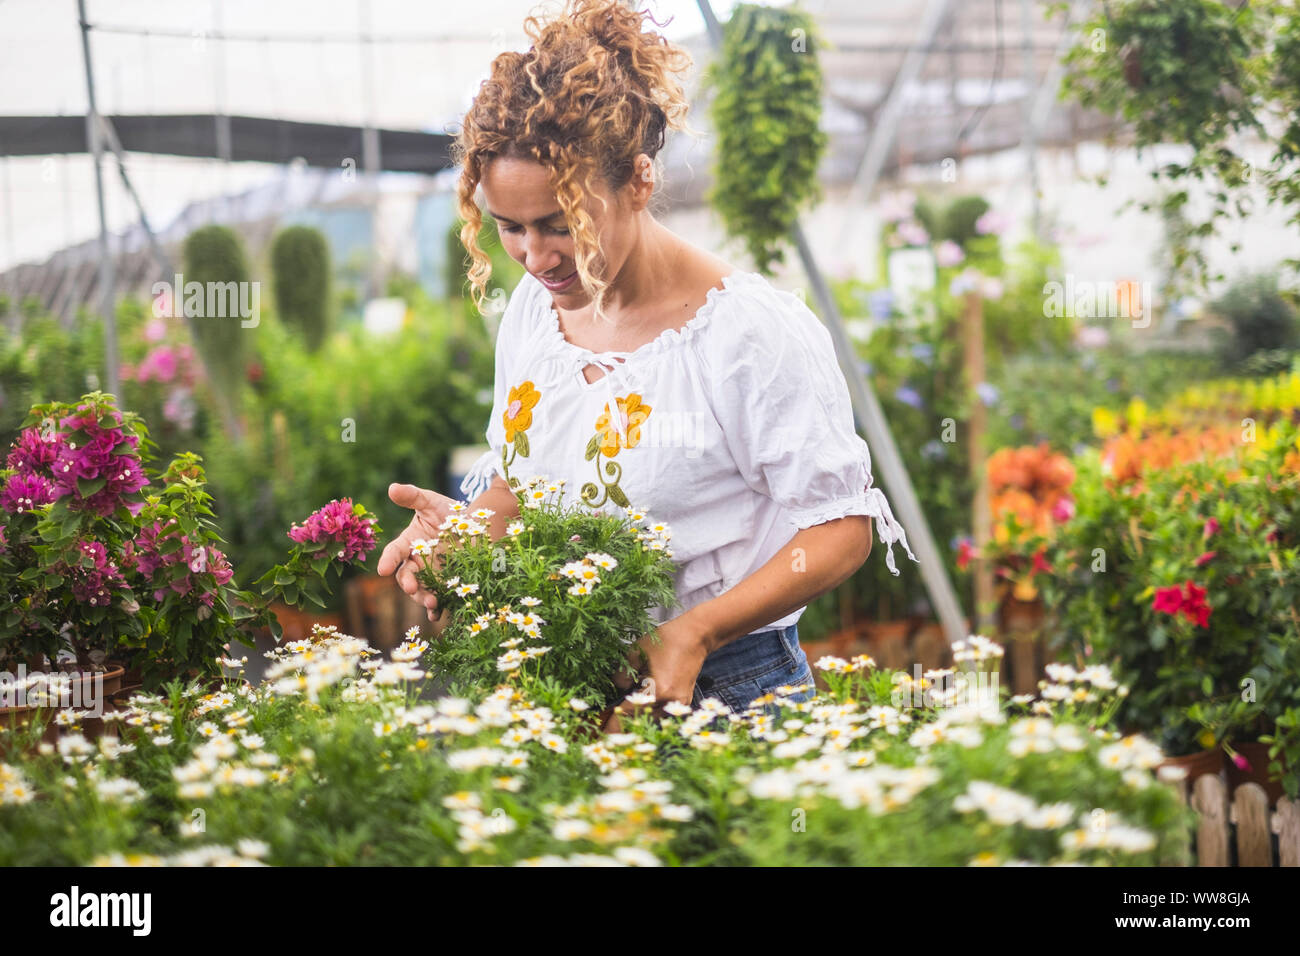 Junge Floristen arbeiten in einem Gewächshaus mit vielen Sämlinge bewundert das Wachstum der weißen Blüten wie Gänseblümchen, Konzept der Sorgfalt und Leidenschaft für die Natur Stockfoto